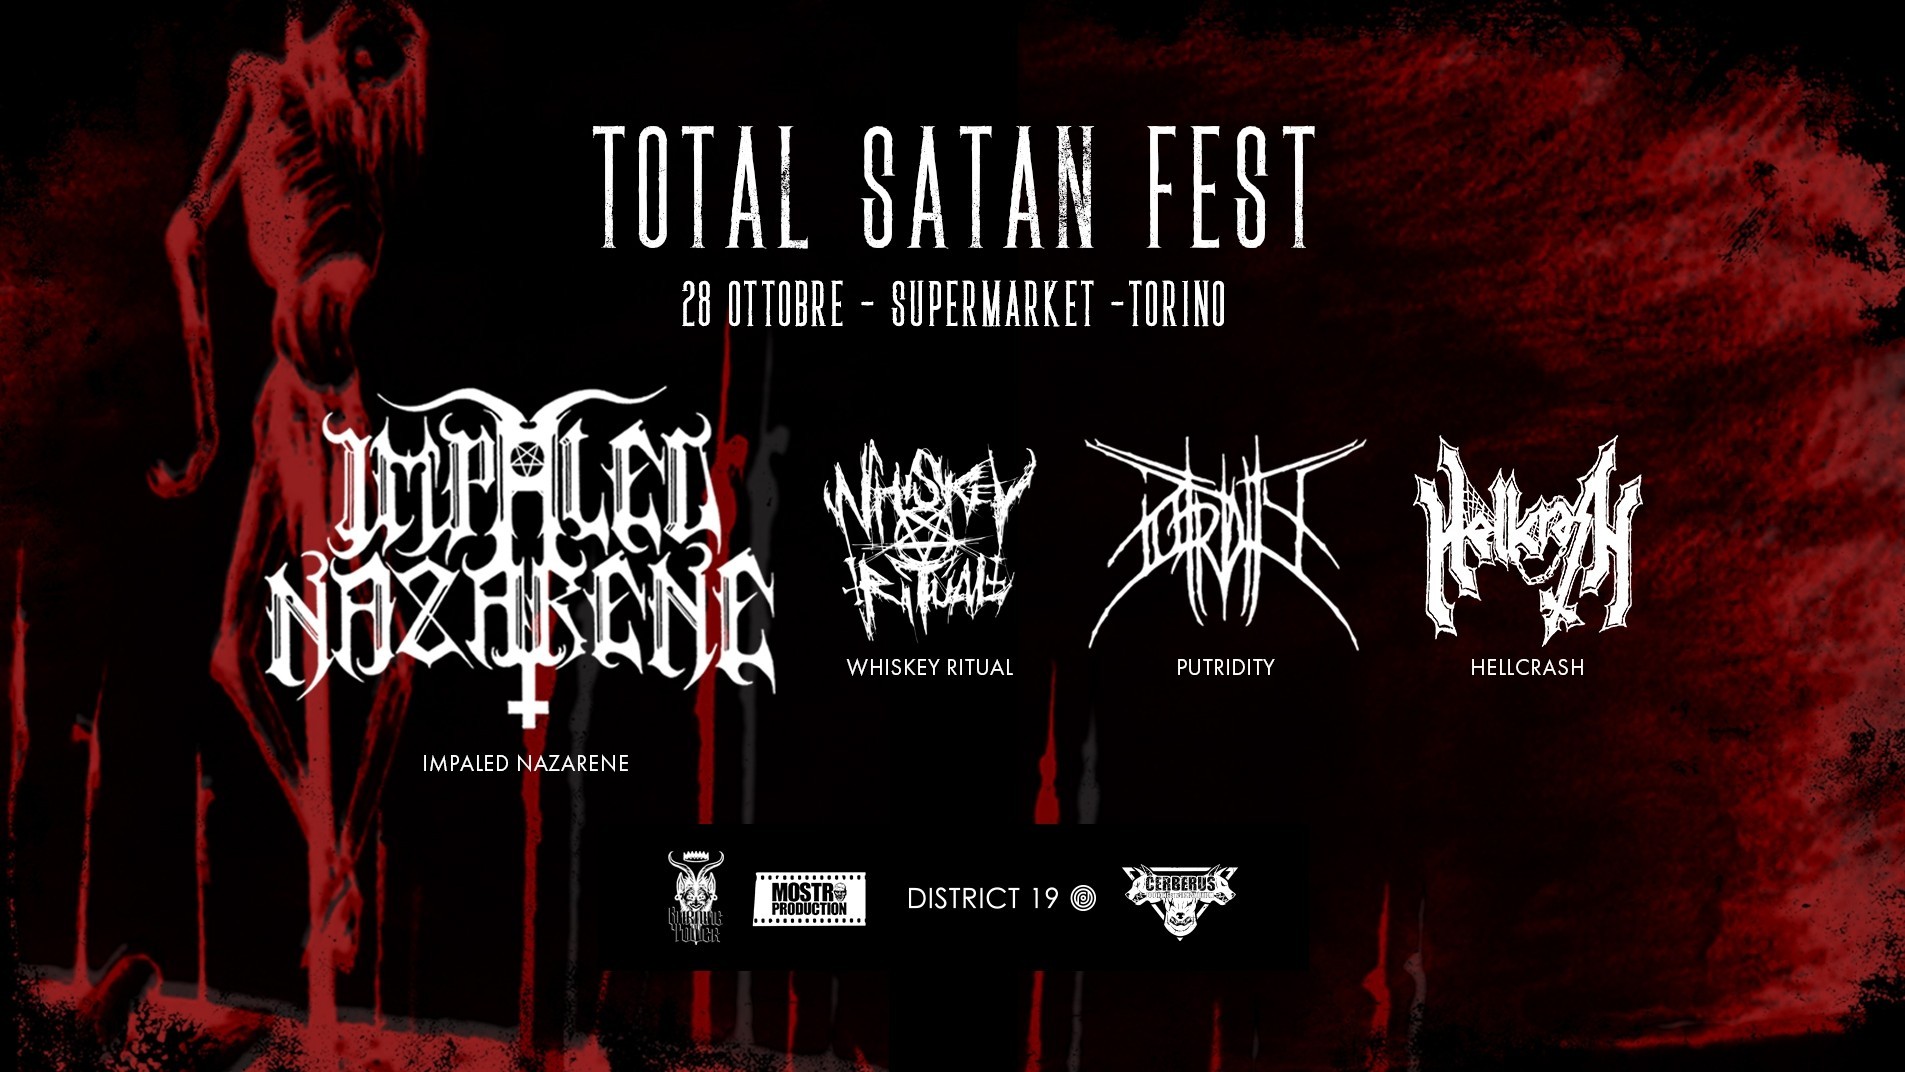 IMPALED NAZARENE + WHISKEY RITUAL + PUTRIDITY + HELLCRASH – il Total Satan Fest di sabato 28 ottobre al Supermarket di Torino nel nostro live report!